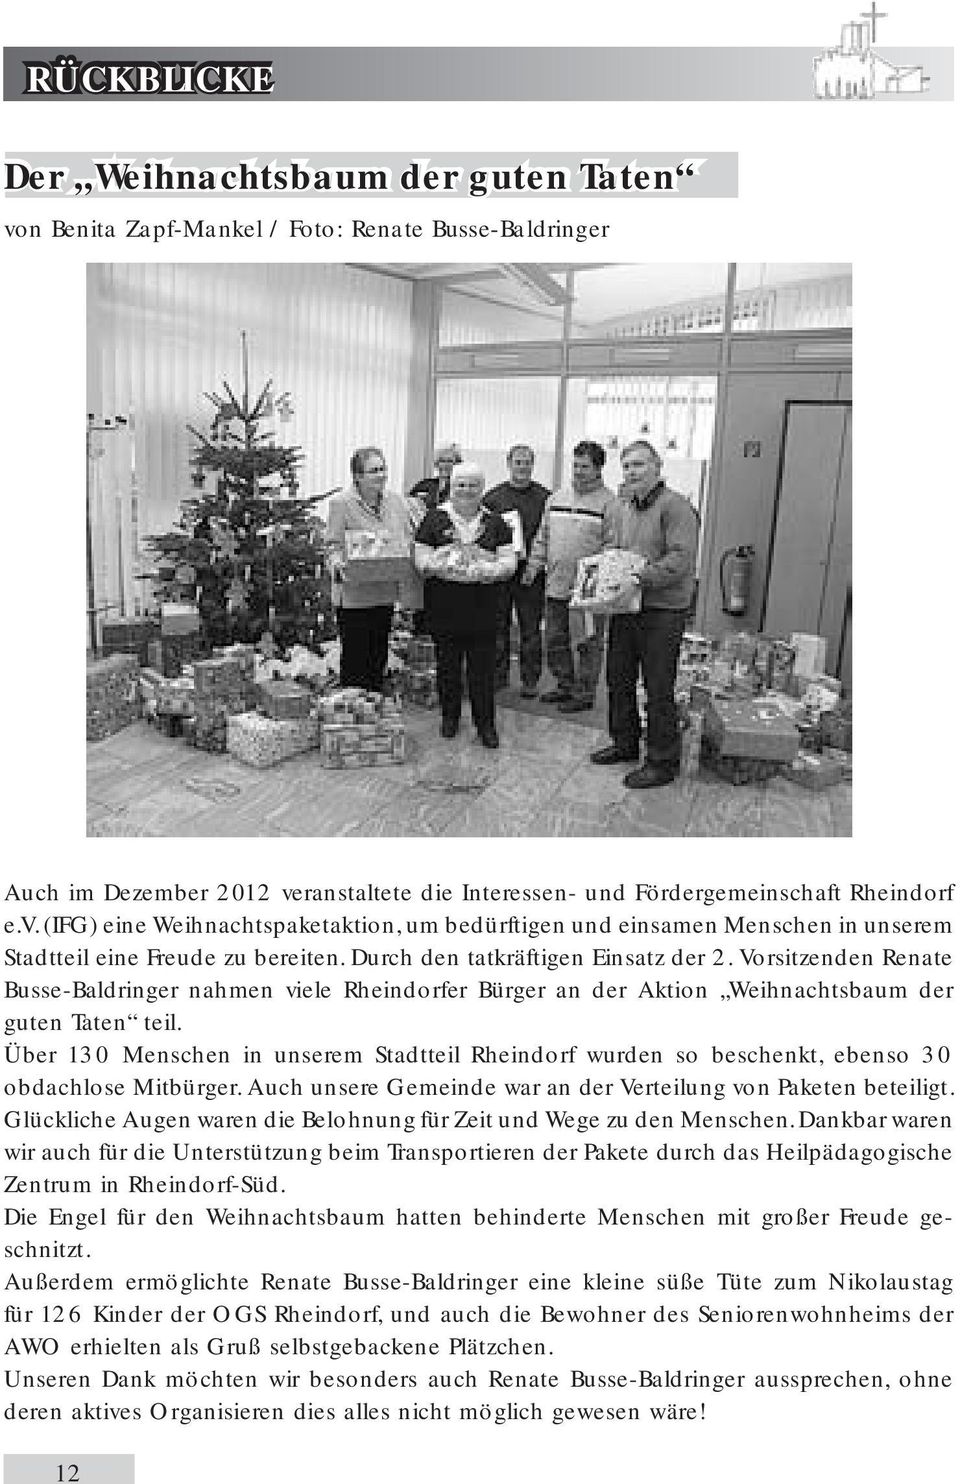 Über 130 Menschen in unserem Stadtteil Rheindorf wurden so beschenkt, ebenso 30 obdachlose Mitbürger. Auch unsere Gemeinde war an der Verteilung von Paketen beteiligt.